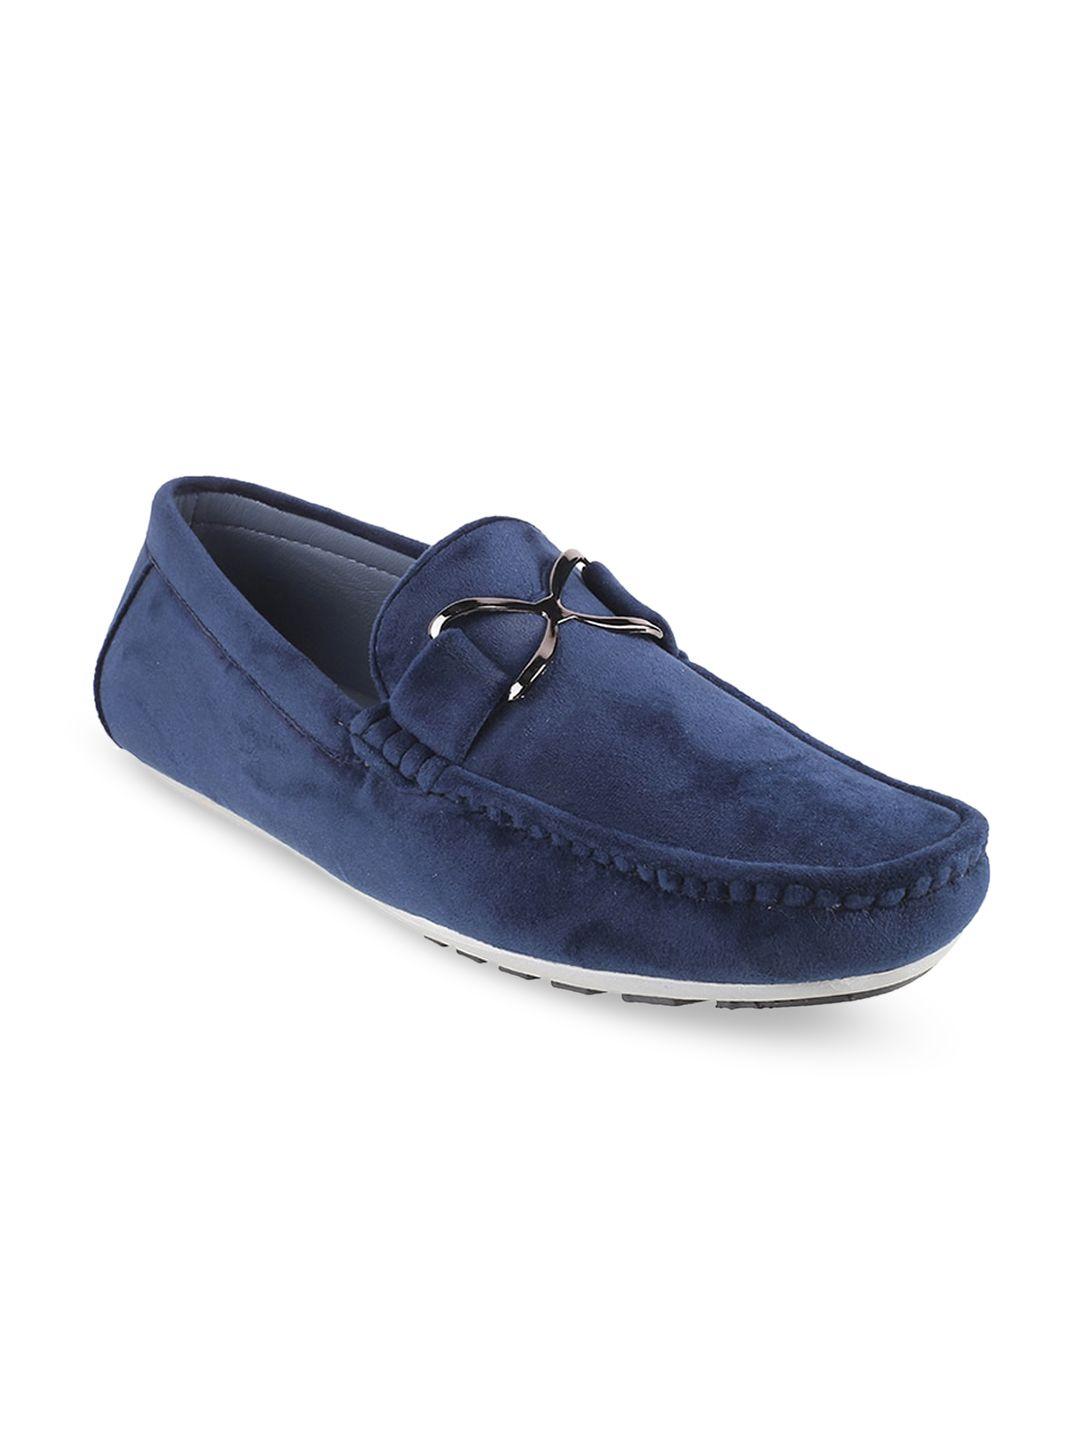 mochi-men-embellished-comfort-insole-suede-horsebit-loafers